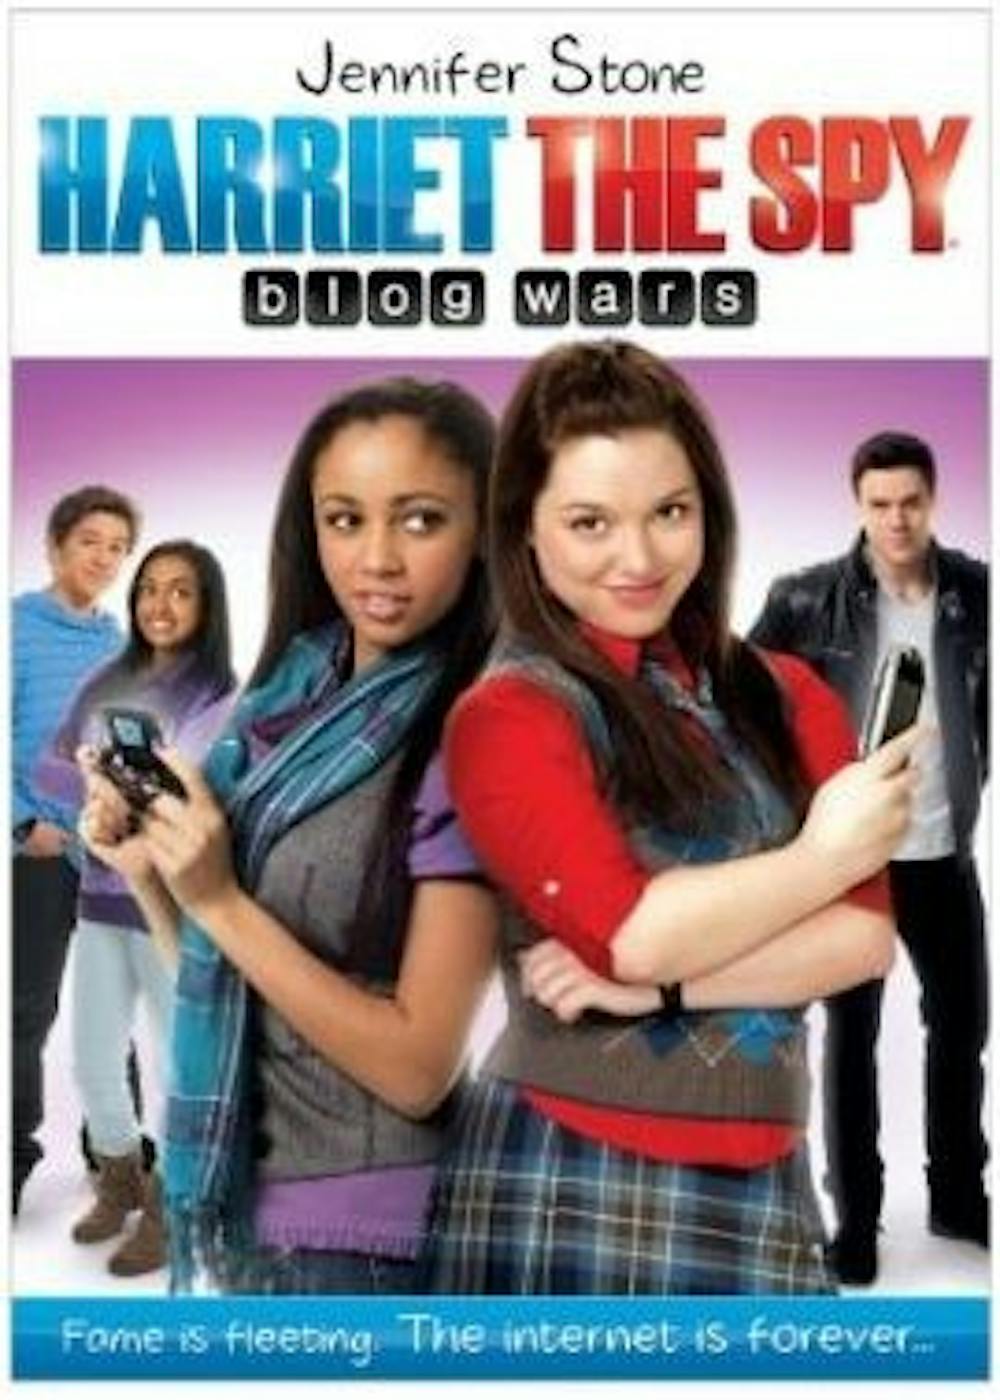 Harriet-the-Spy-blog-Wars-DVD